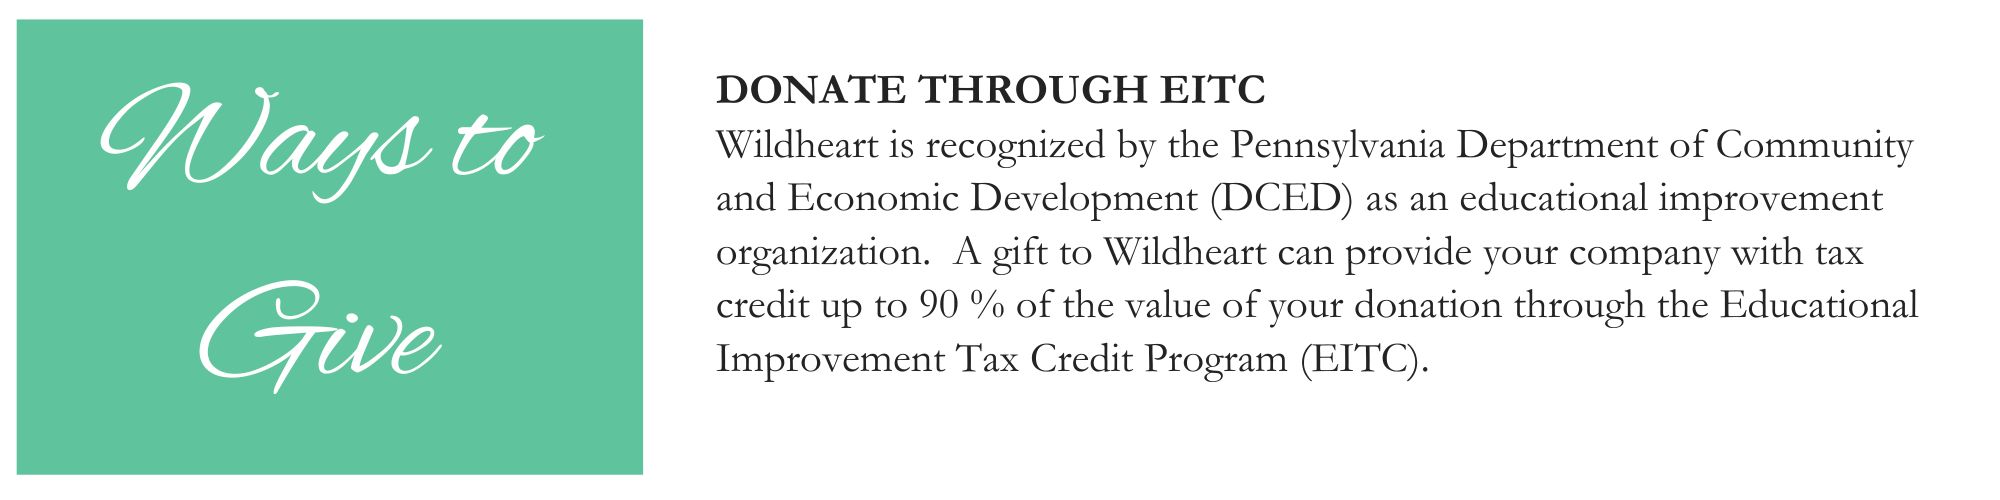 Donate through EITC